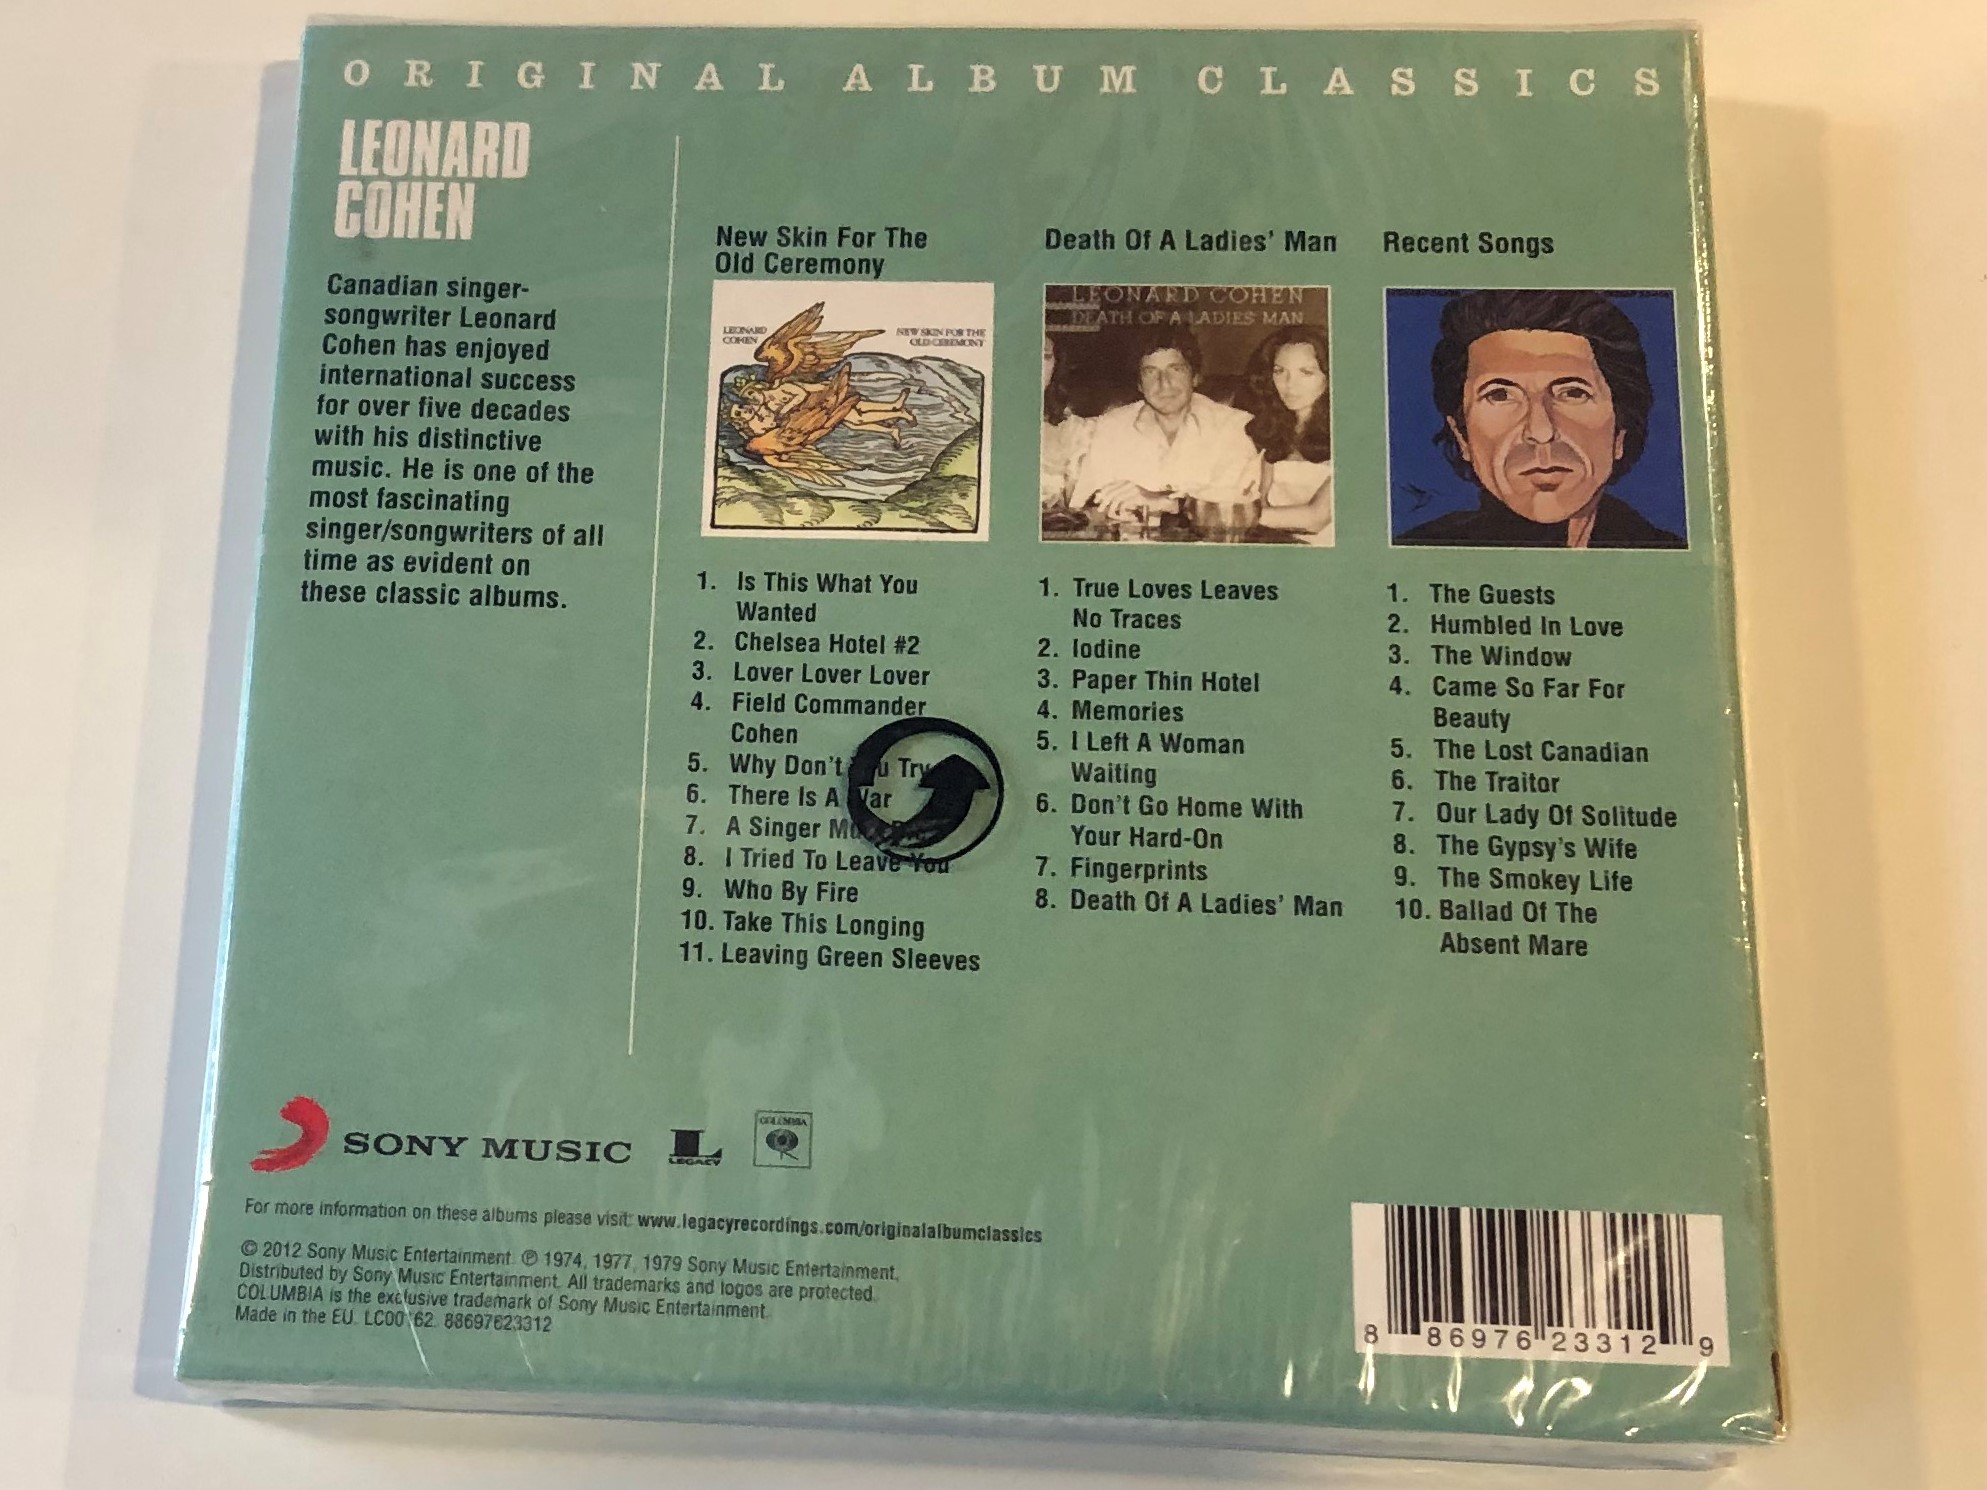 original-album-classics-leonard-cohen-sony-music-audio-cd-2012-88697623312-2-.jpg